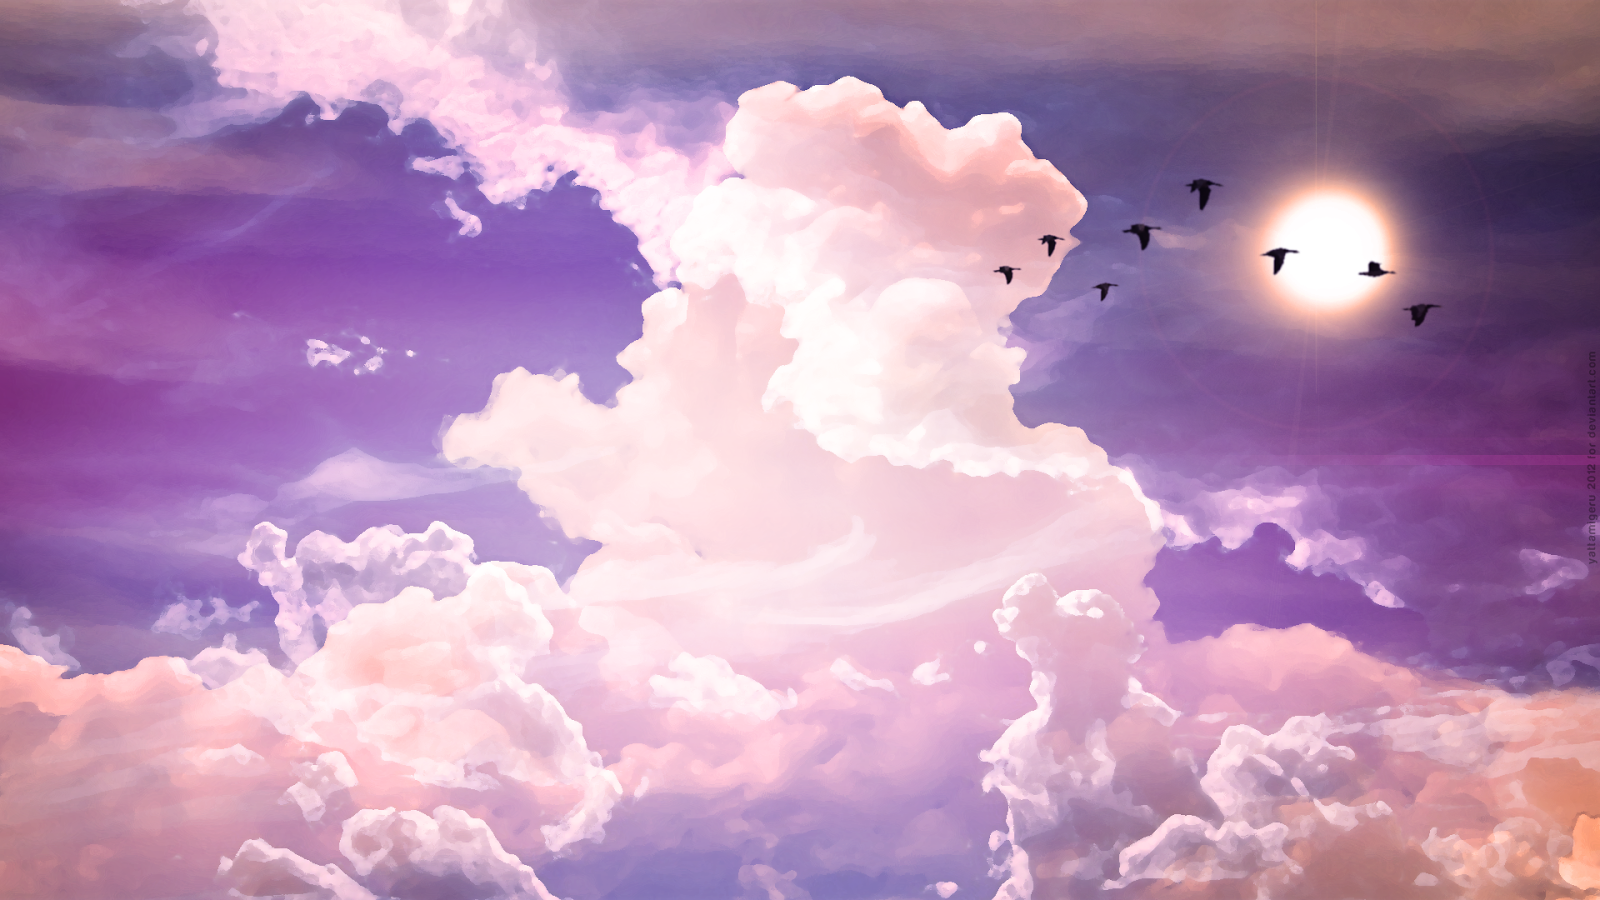 hd wallpapers for desktop sky cloud wallpapers hd